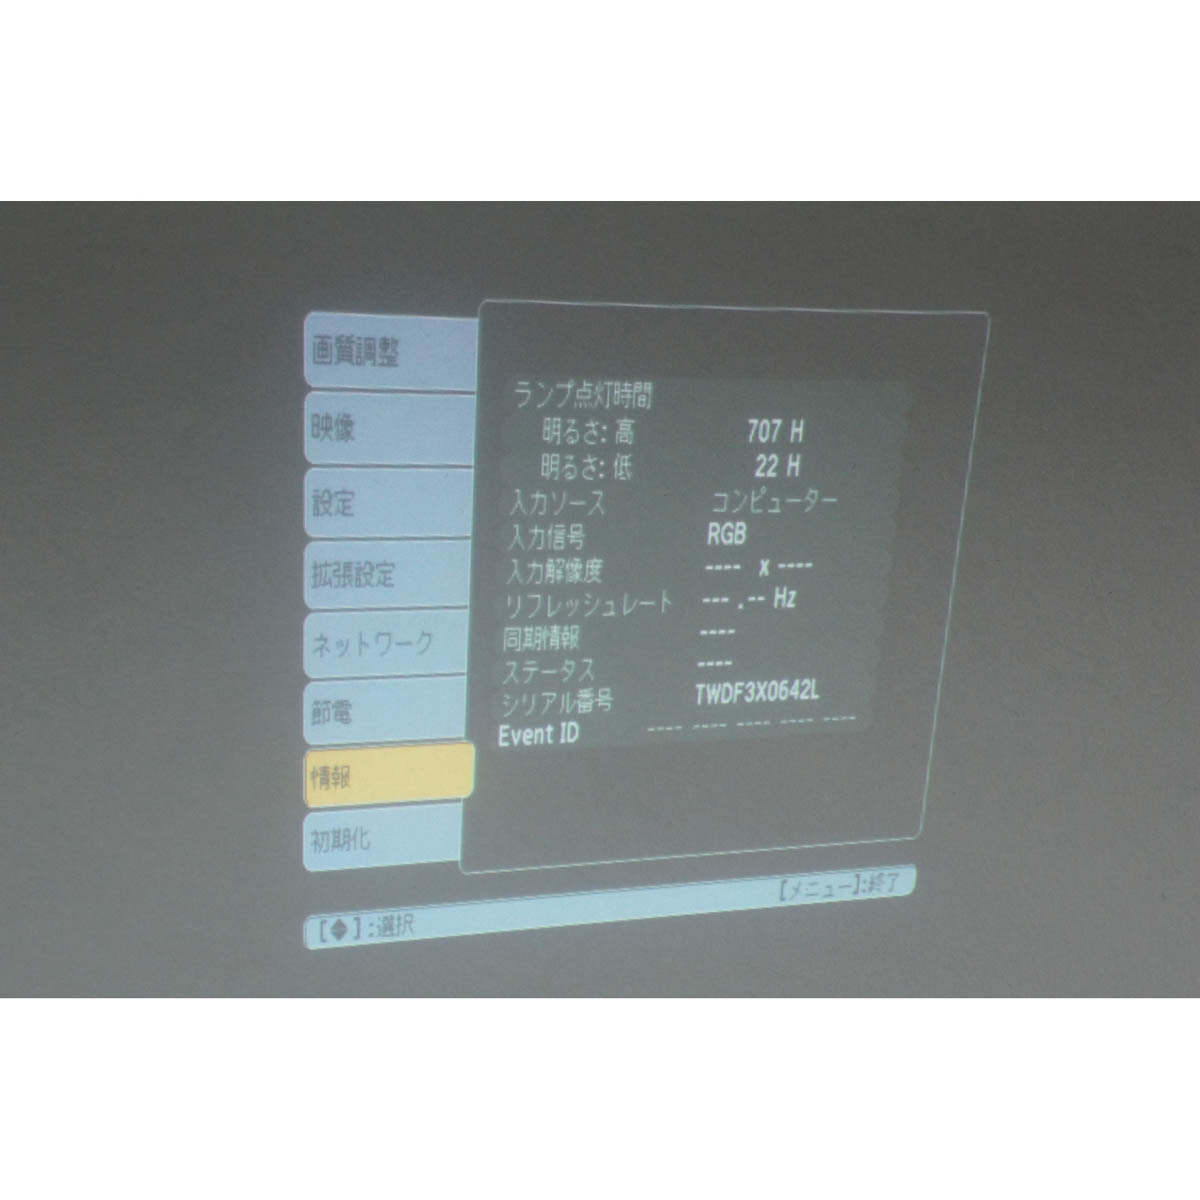 超爆安 [PG]USED WXGA...[ST02418-0109] 2800lm HDMI プロジェクター PROJECTOR LCD H566D  EH-TW410 EPSON ランプ729時間 8日保証 - 本体 - labelians.fr